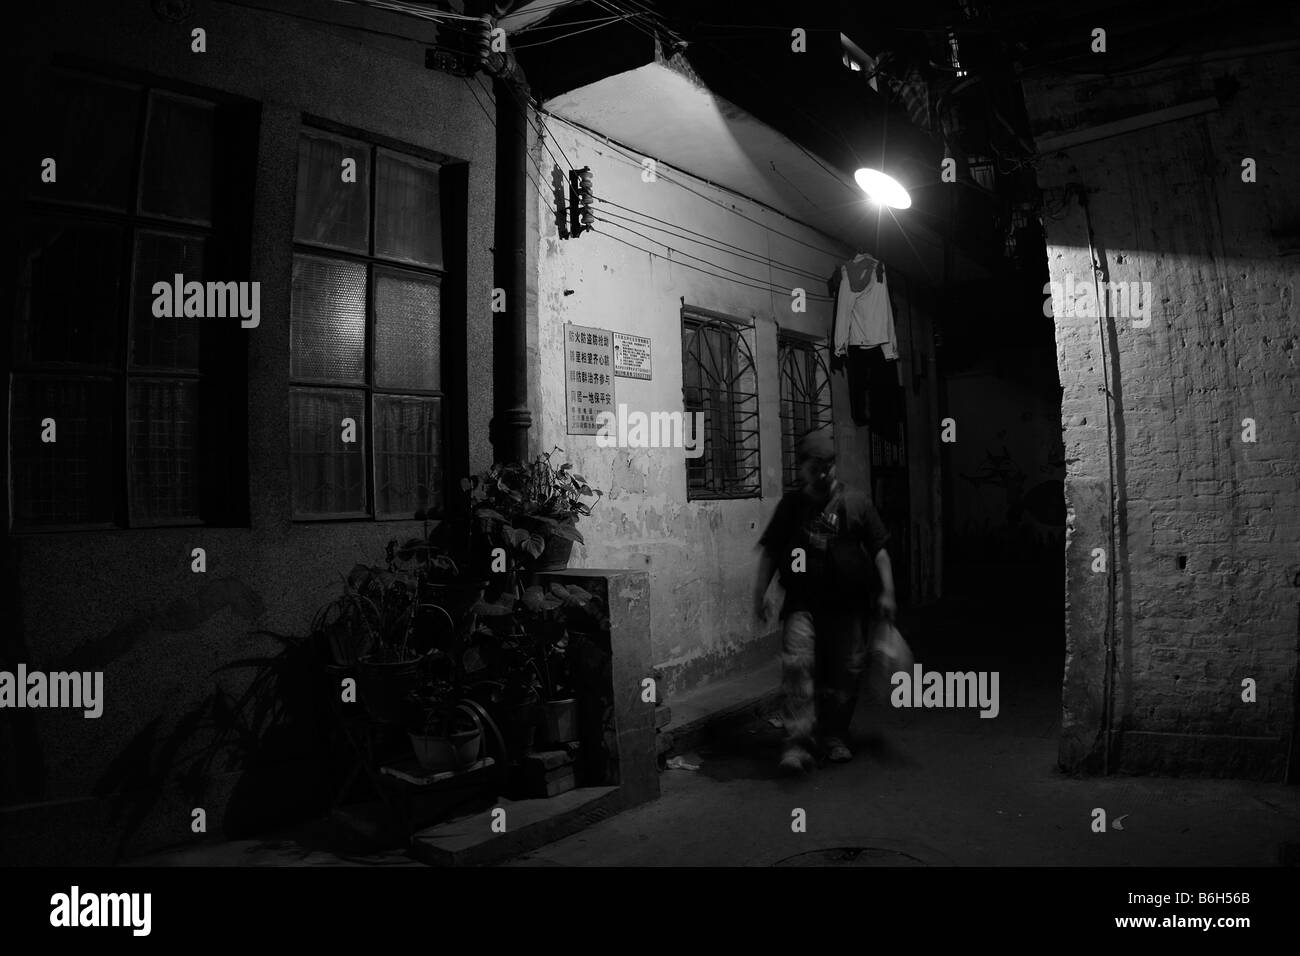 Abbildung Bewegung zu Fuß hinunter eine alte dunkel beleuchteten Ecke Allee vorbei an einer alten Lagerhalle im Schatten der obenliegenden Straßenlaternen in China Stockfoto